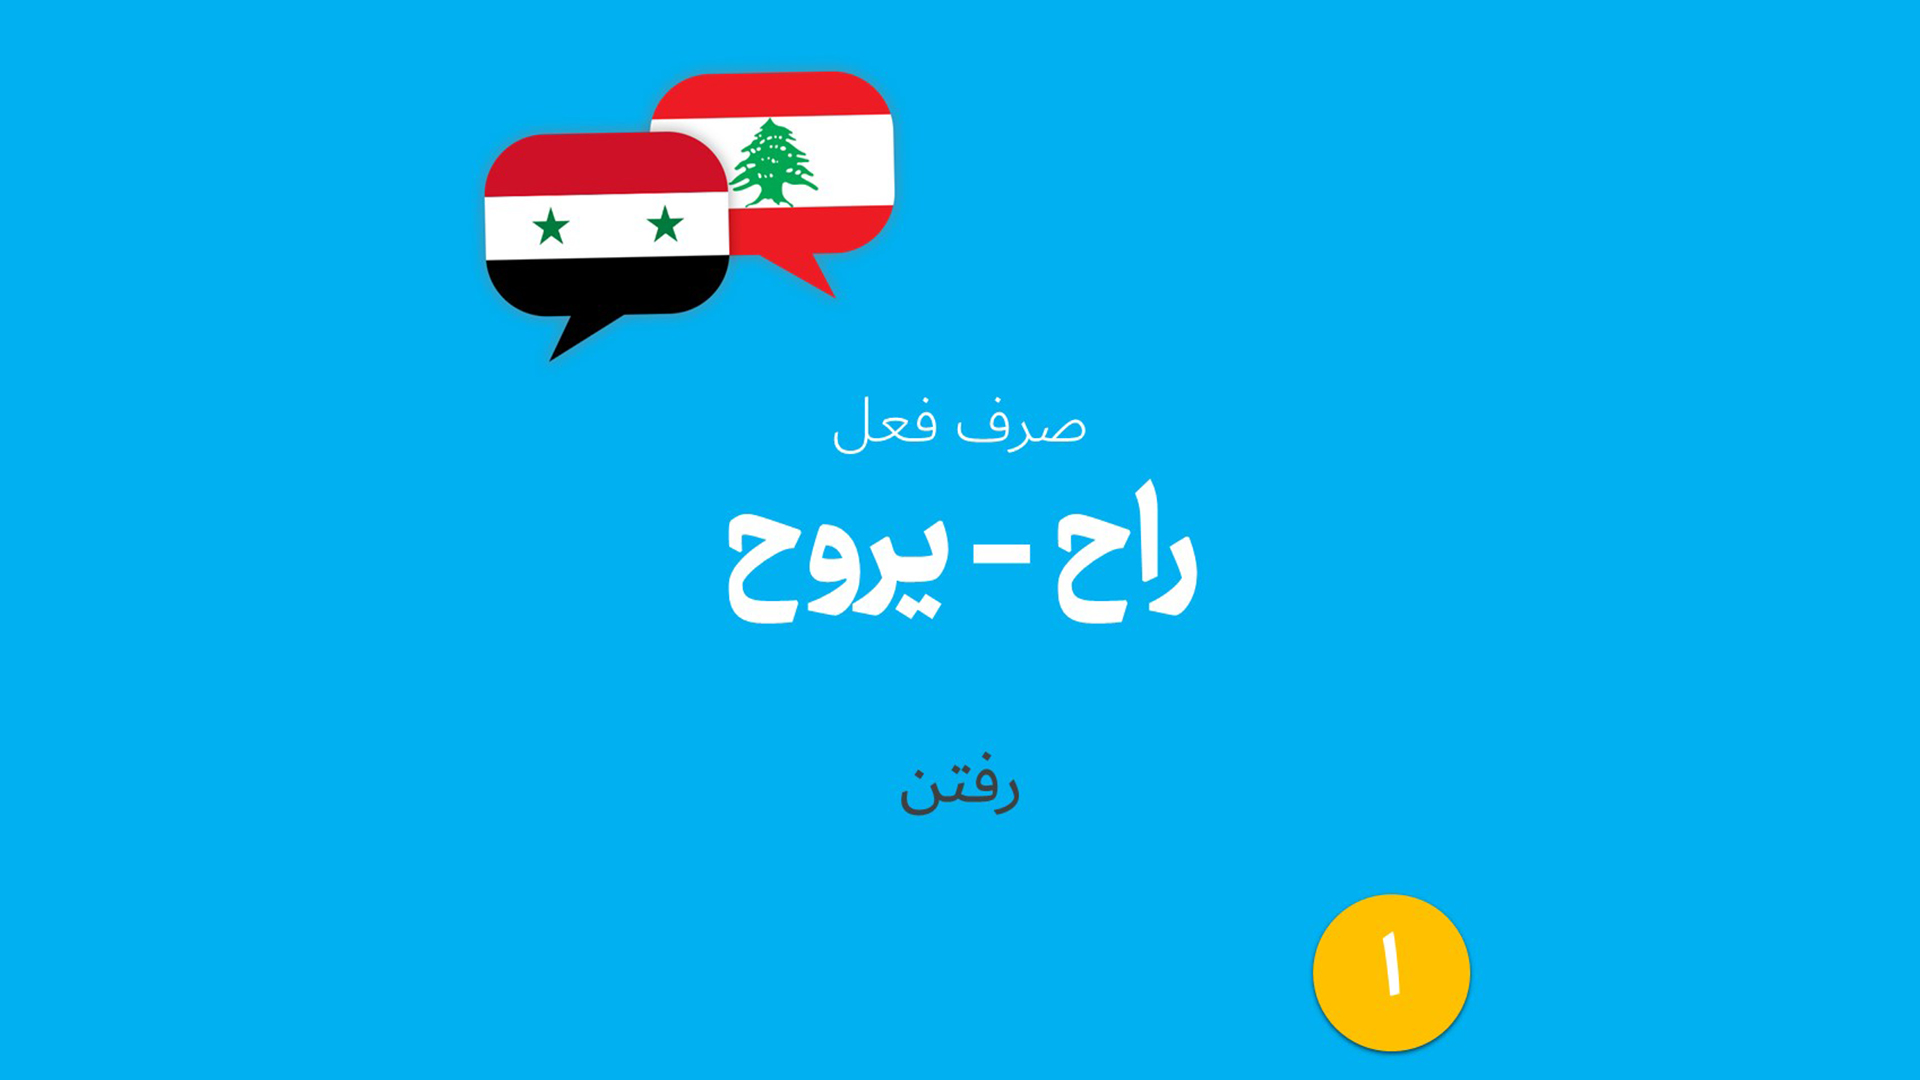 صرف فعل عربی رفتن در لهجه لبنانی و سوری (01)